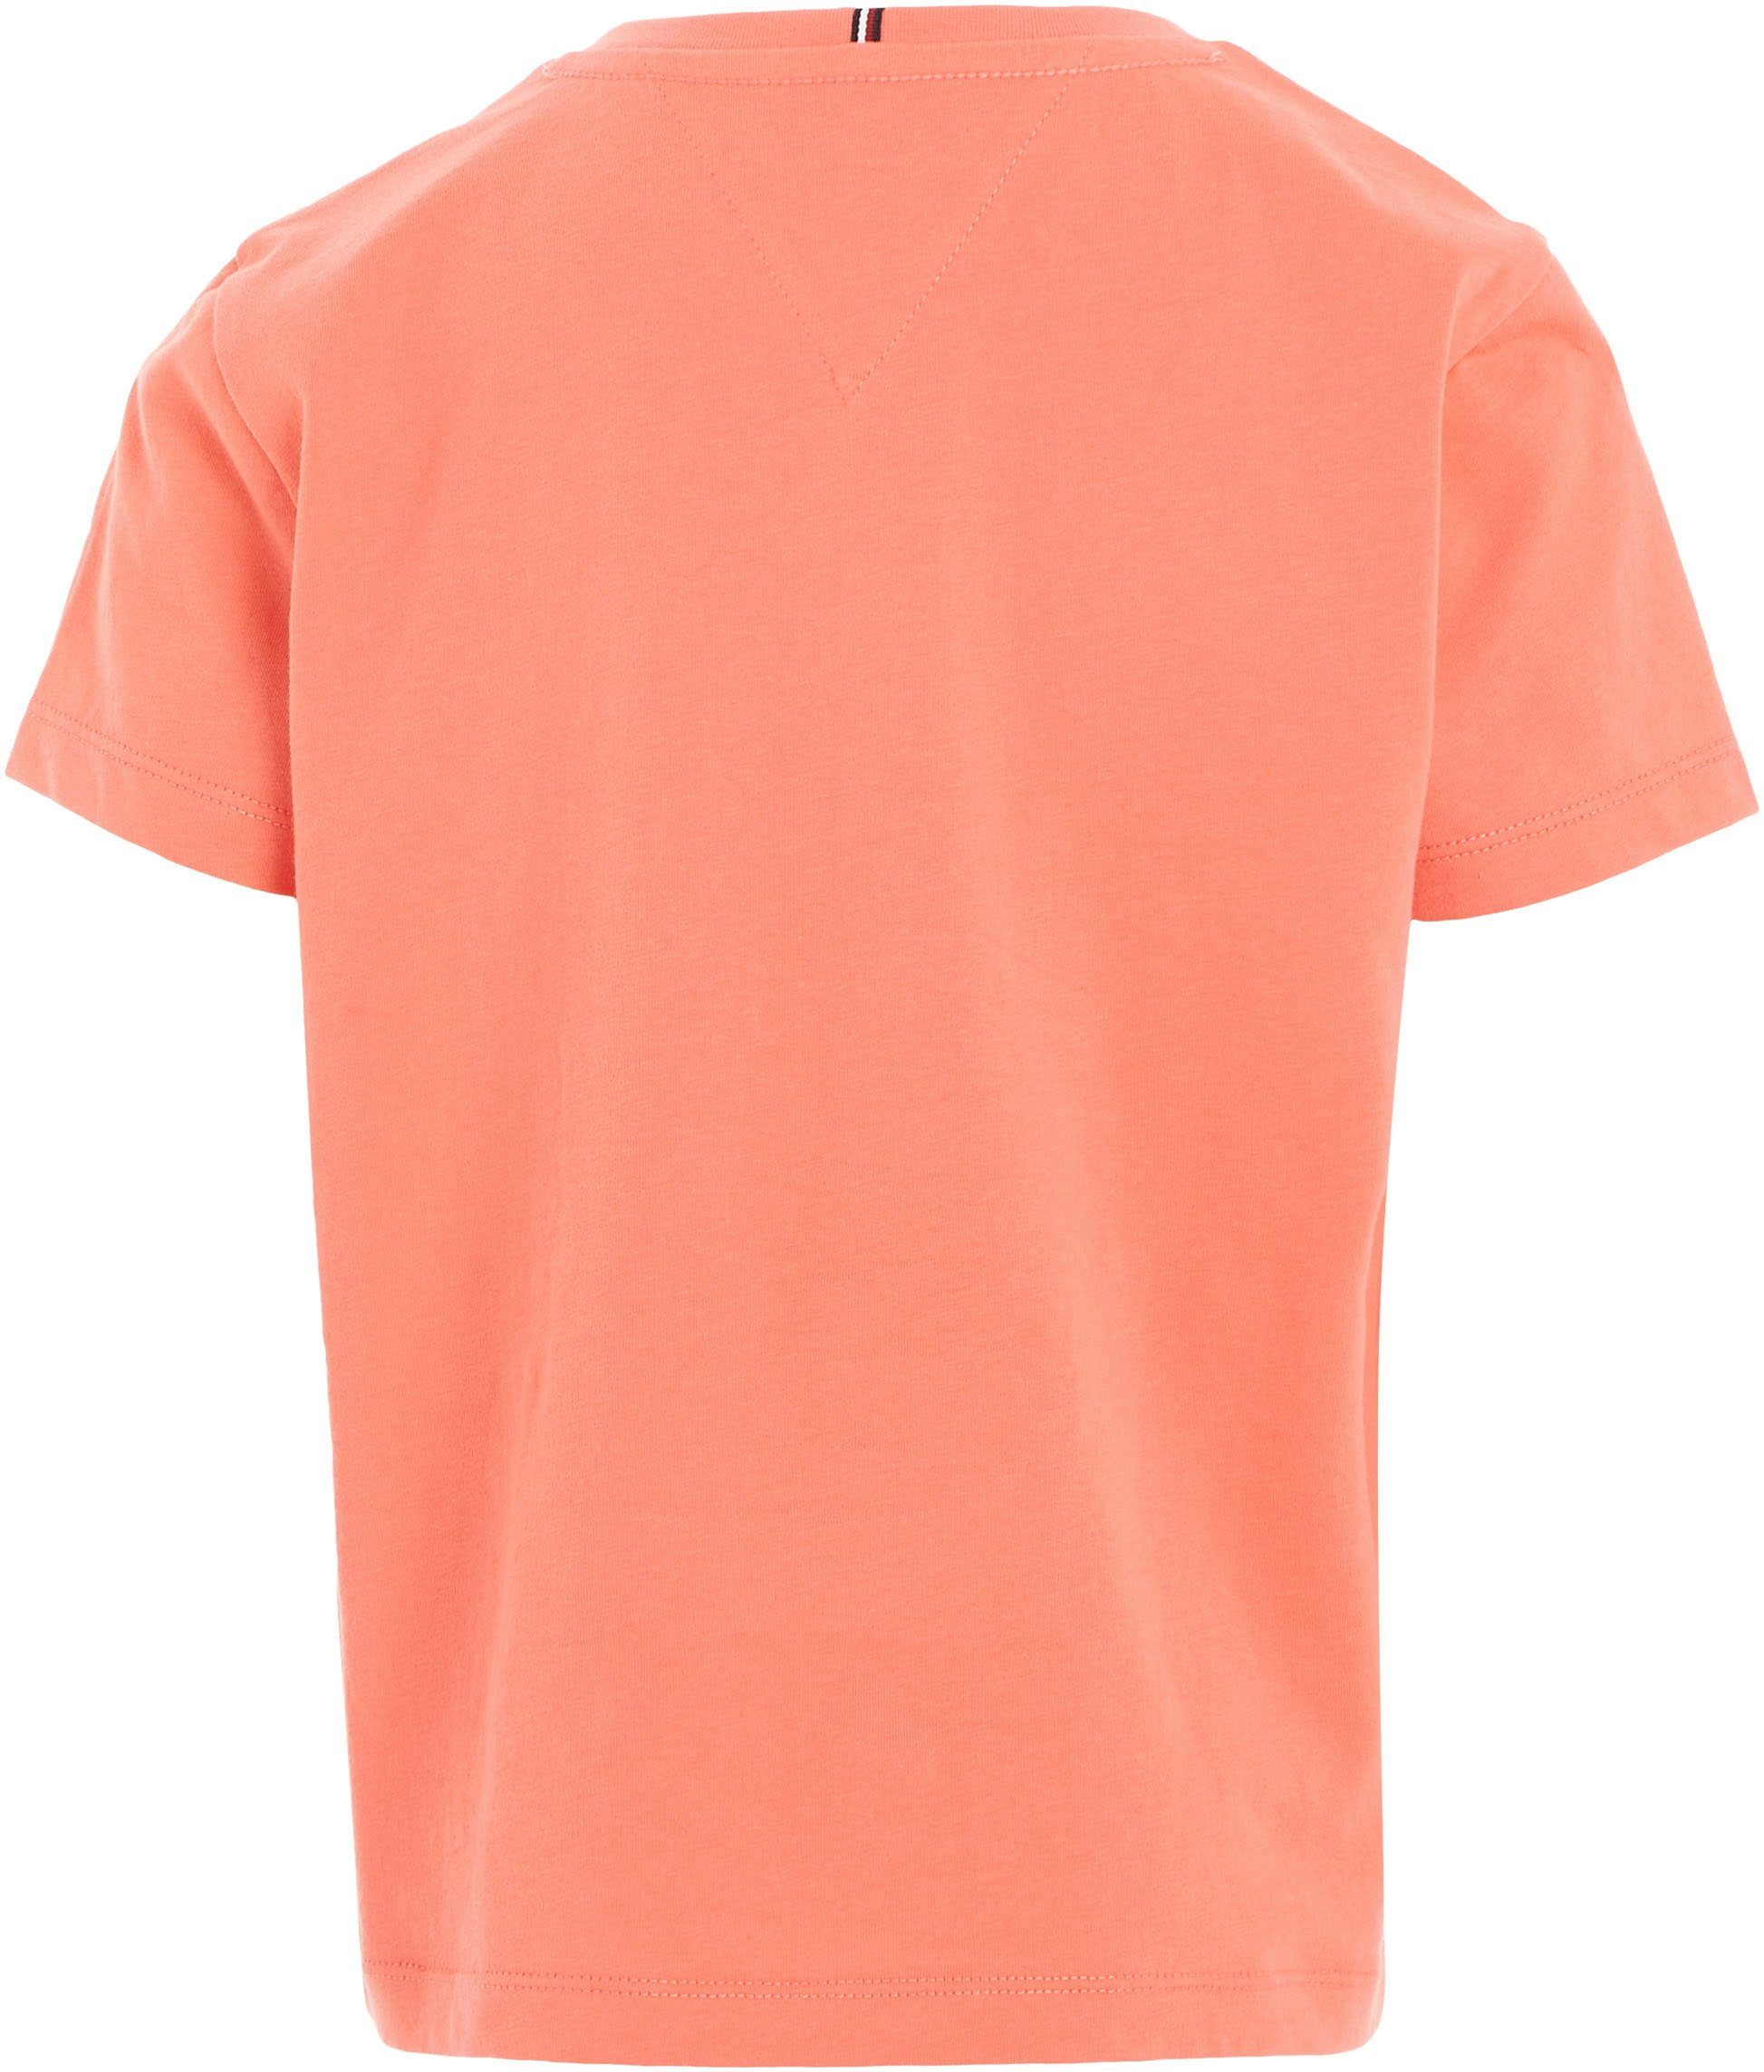 MONOTYPE Hilfiger-Logoschriftzug auf Hilfiger der koralle T-Shirt TEE S/S Brust Tommy mit modischem